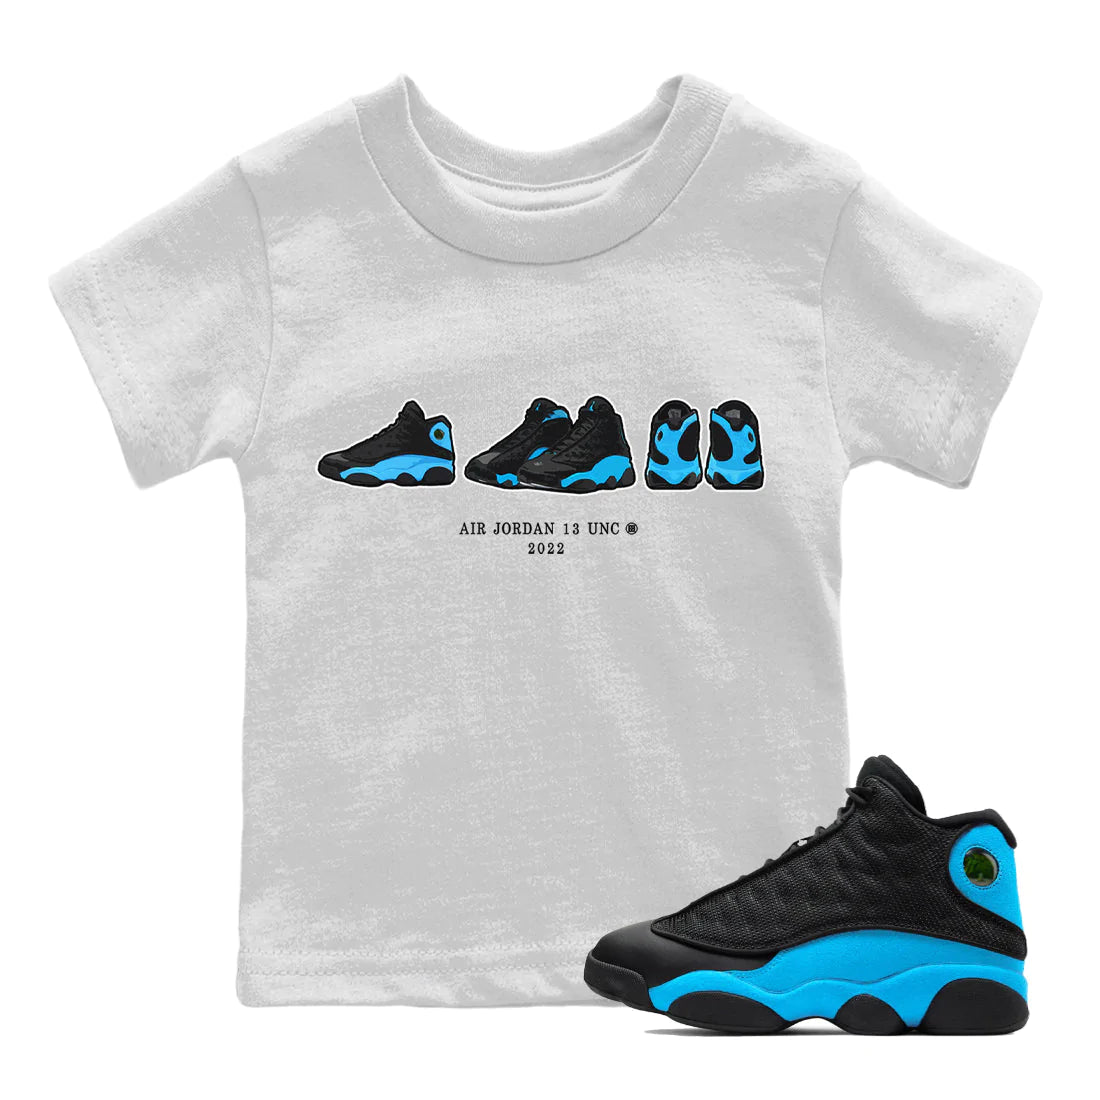 Jordan 13 UNC Sneaker Match Tees Air Jordan 13 Prelude Sneaker Tees Jordan 13 UNC Sneaker Release Tees Kids Shirts